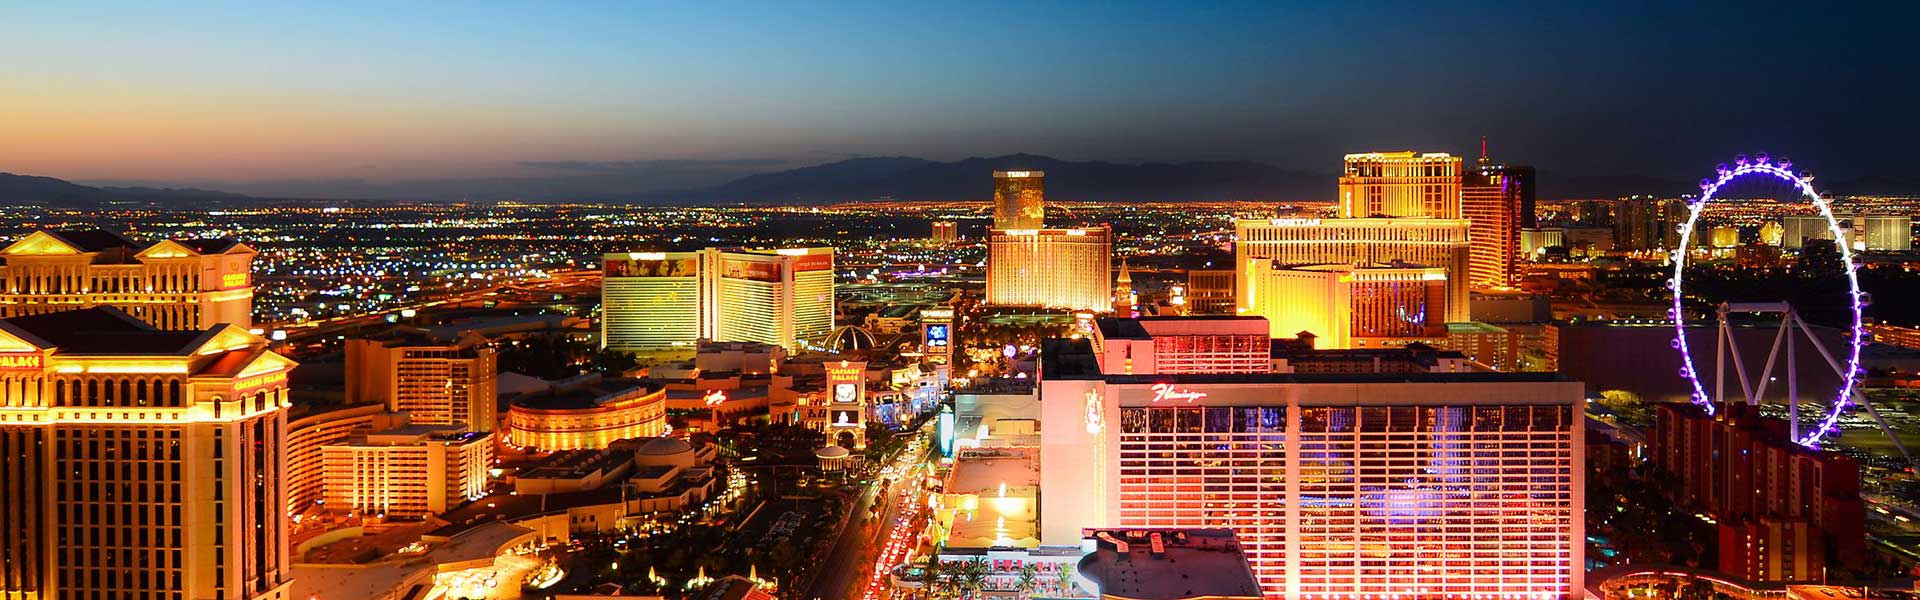 View of Las Vegas skyline at Night